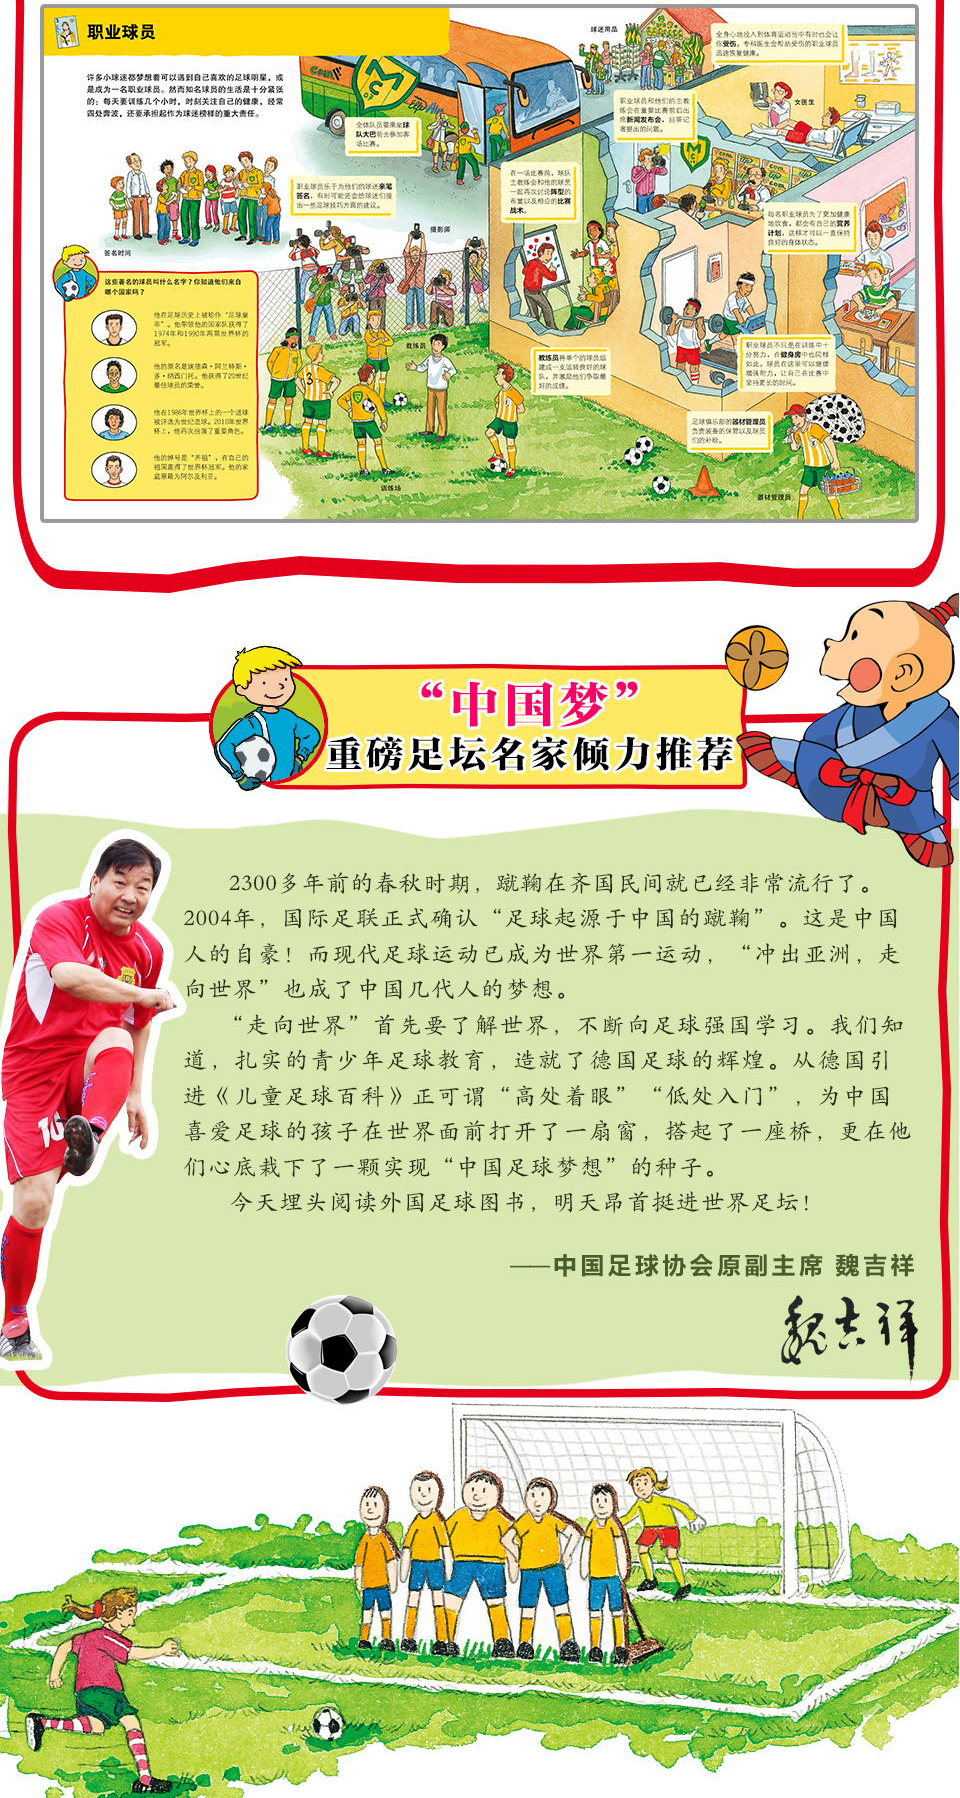 我园课题《幼儿园足球游戏活动的实践研究》课题推进活动